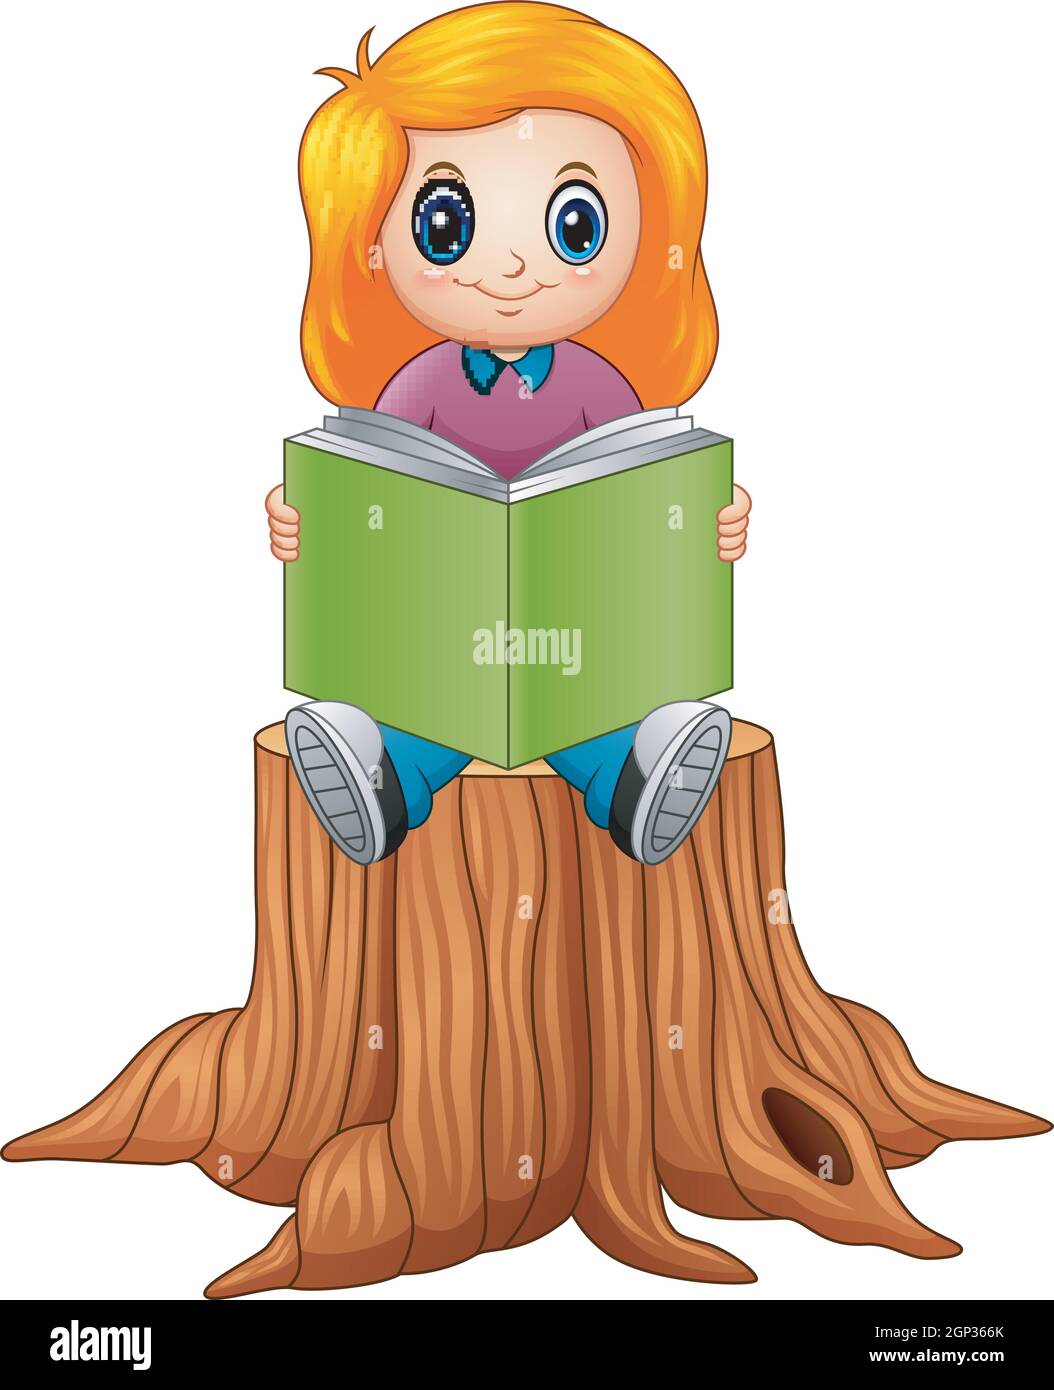 Little girl reading book over tree stump Stock Vector